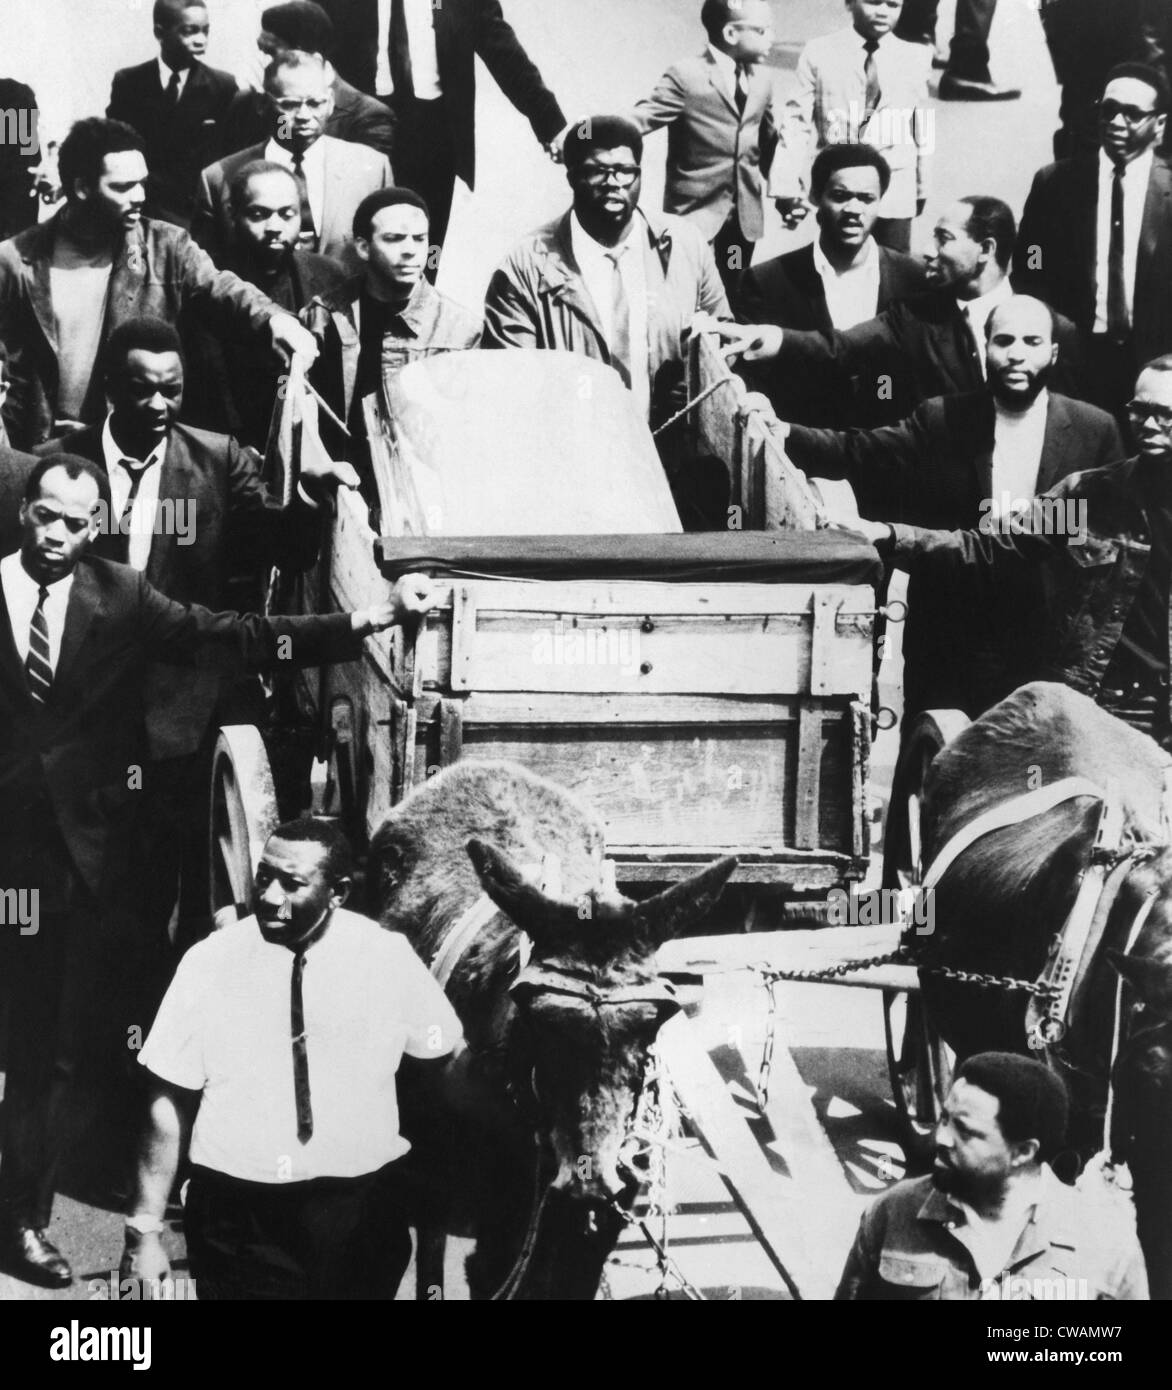 Cortège funéraire pour le Dr. Martin Luther King Jr., Memphis, Tennessee, le 3 avril 1968.. Avec la permission de la CSU : Archives / Everett Banque D'Images